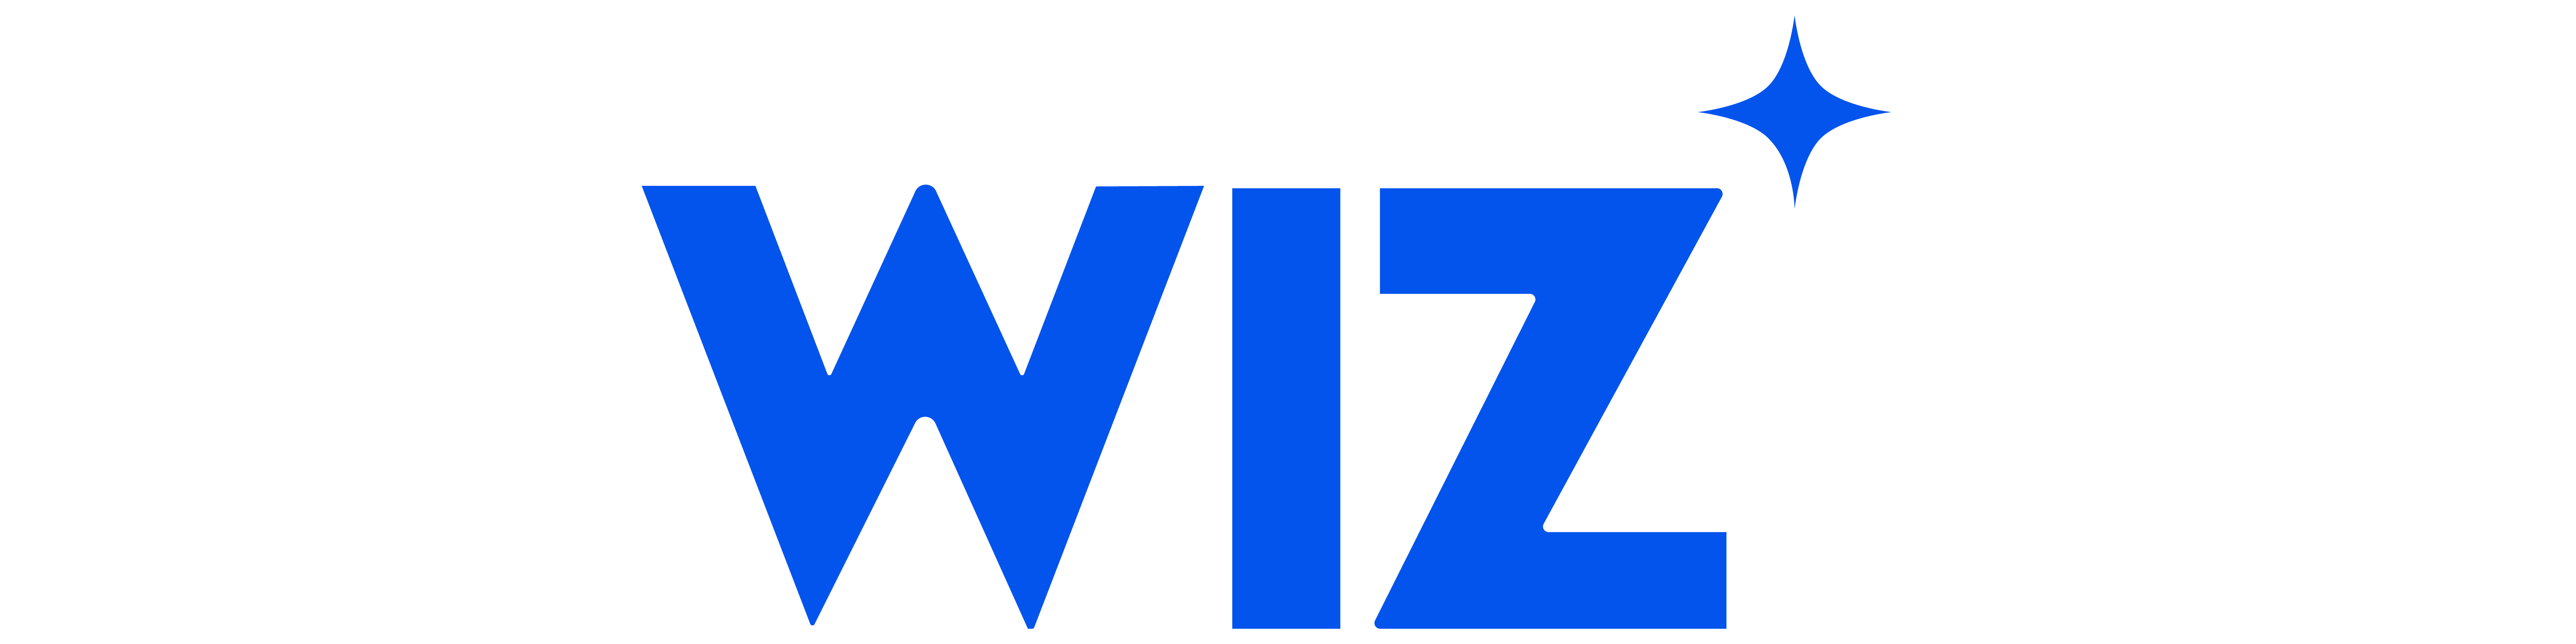 wiz-logo.png